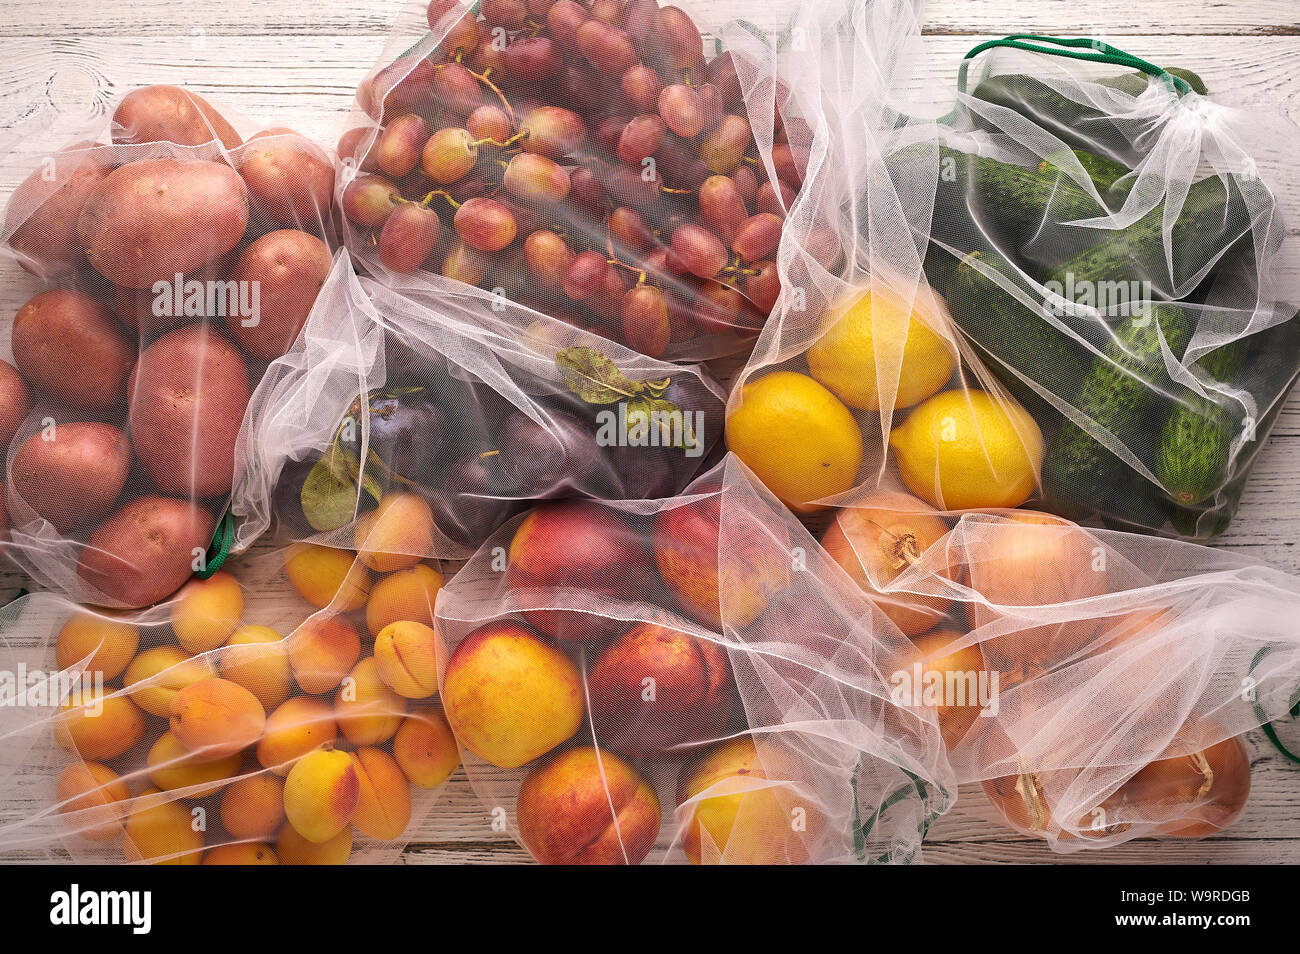 Fruits et légumes dans des sacs réutilisables eco à fond de bois blanc. Sacs recyclés au lieu de sacs en plastique. Articles de plastique. Vue supérieure mise à plat Banque D'Images